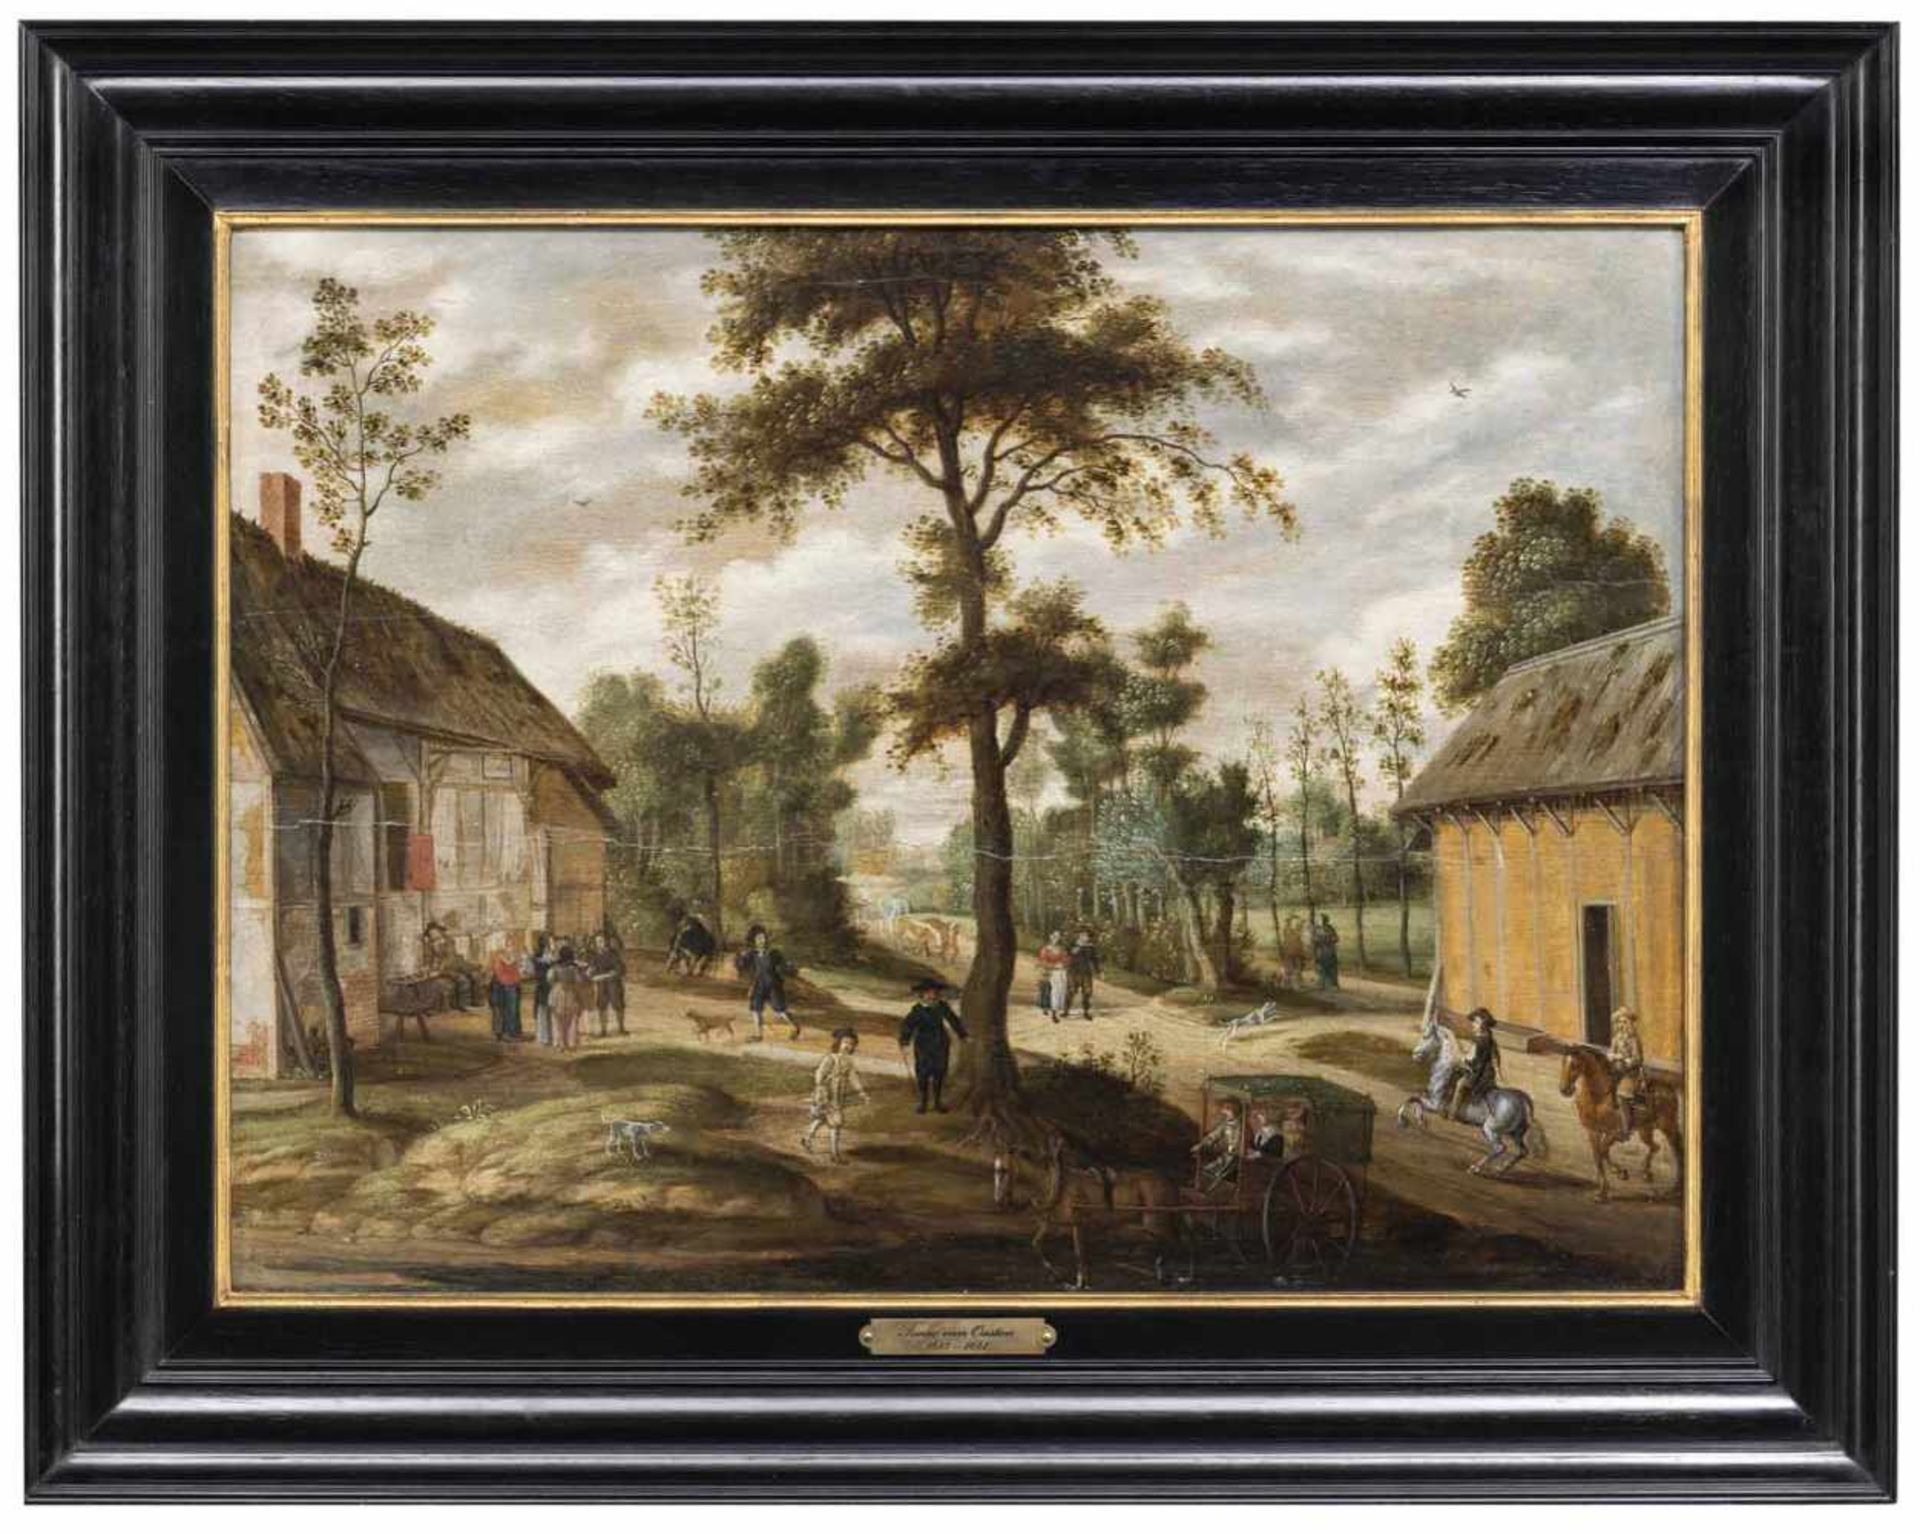 Oosten, Isaac vanAntwerpen 1613 - 166142 x 56 cmReges Treiben auf einer Dorfstraße. Öl/Holz,